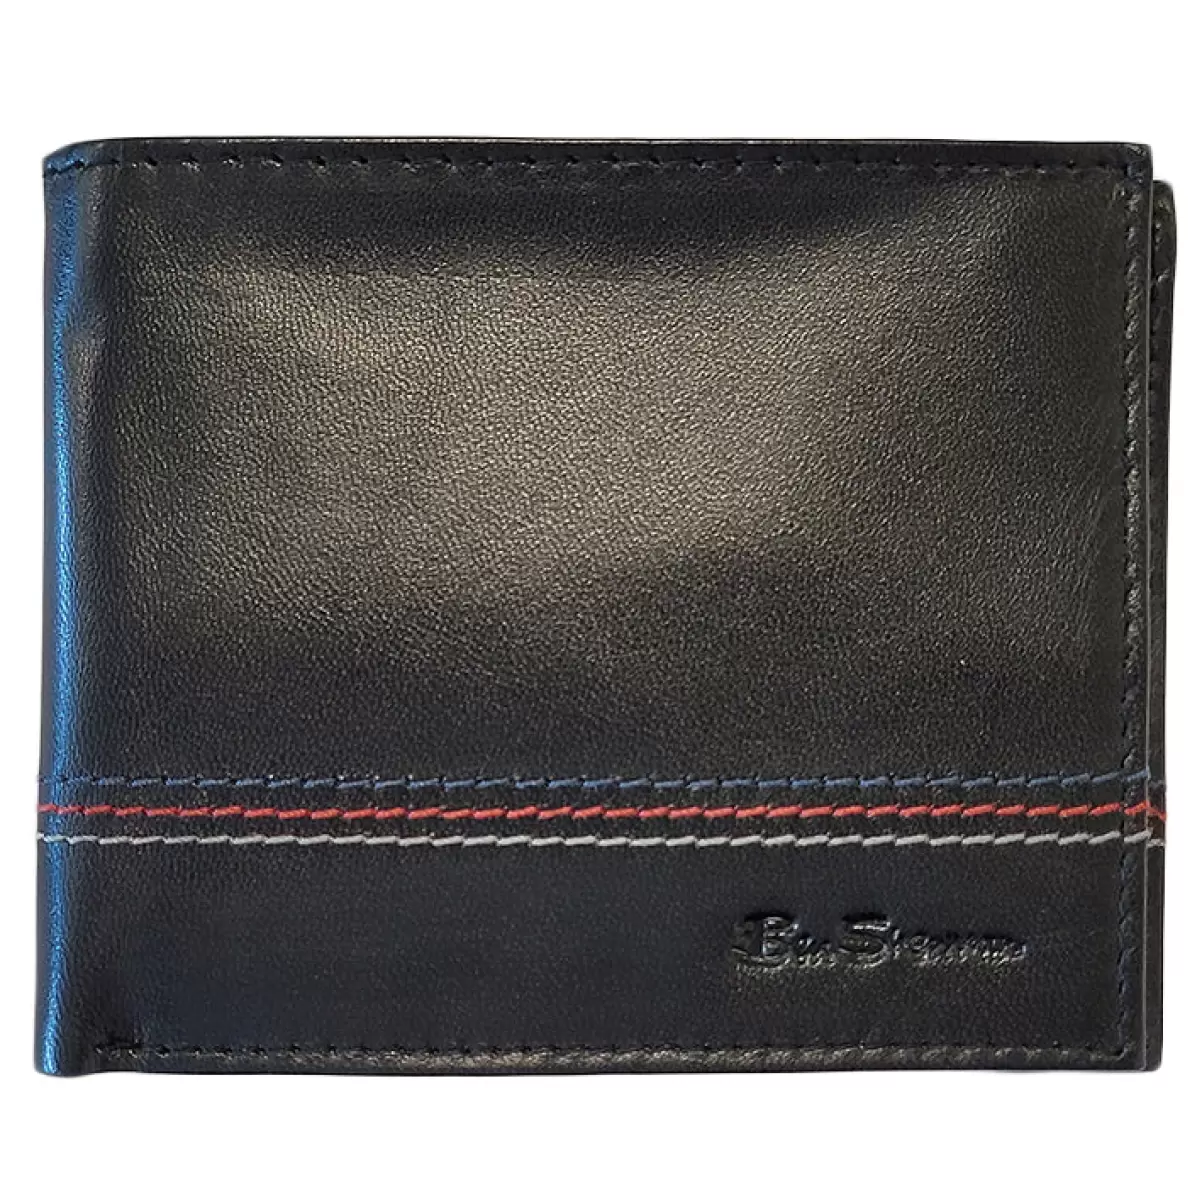 Gillespie Bill Fold Leather Wallet - Black Men Wallets & Card Holders Black Cheap Ben Sherman - 2